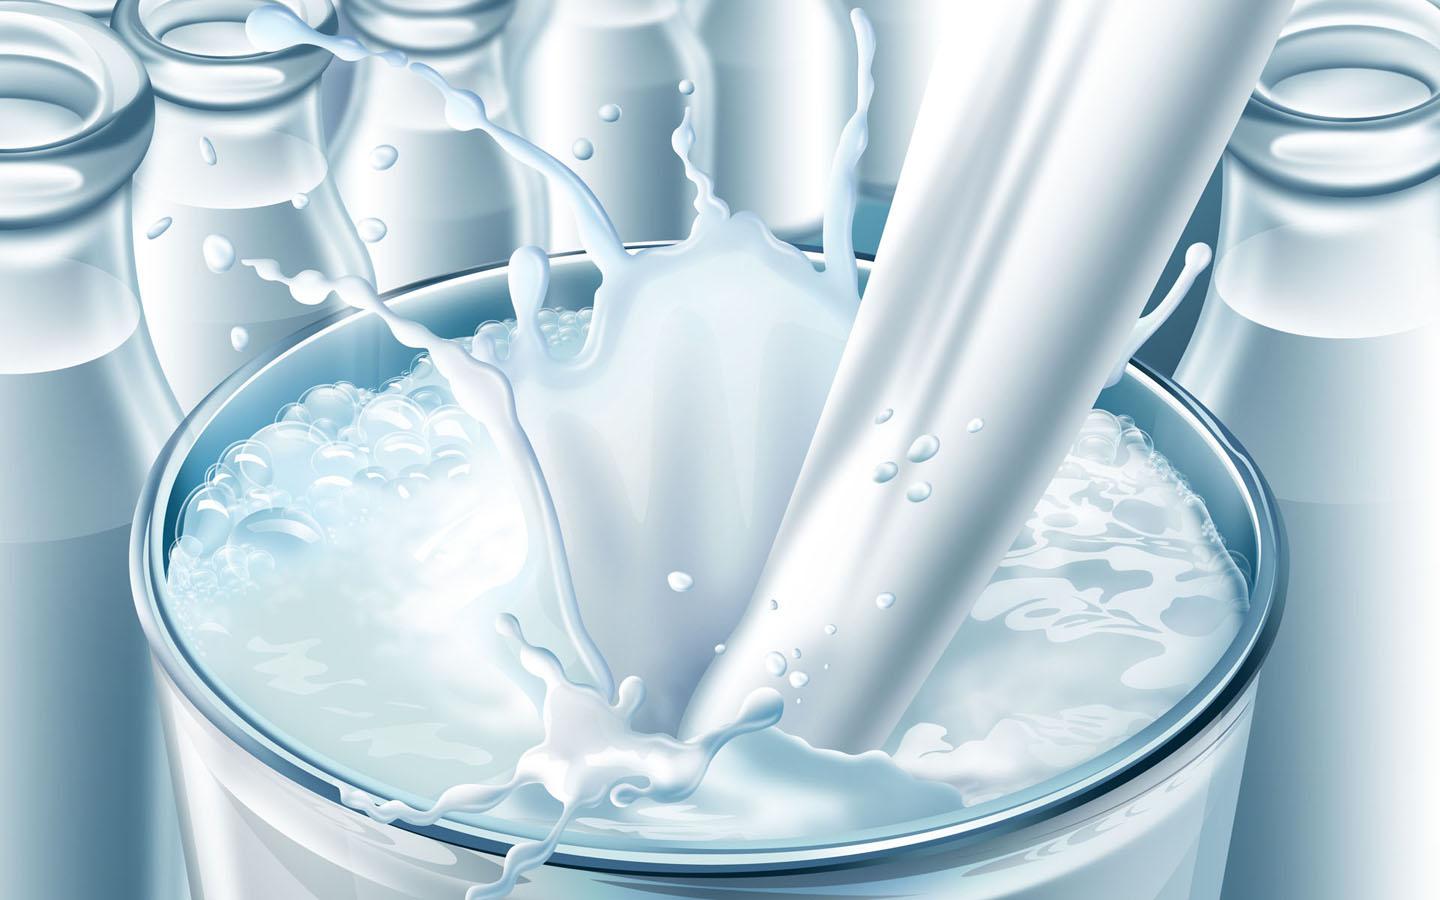 生鲜乳价格上涨 伊利蒙牛部分纯牛奶涨价食品行业资讯